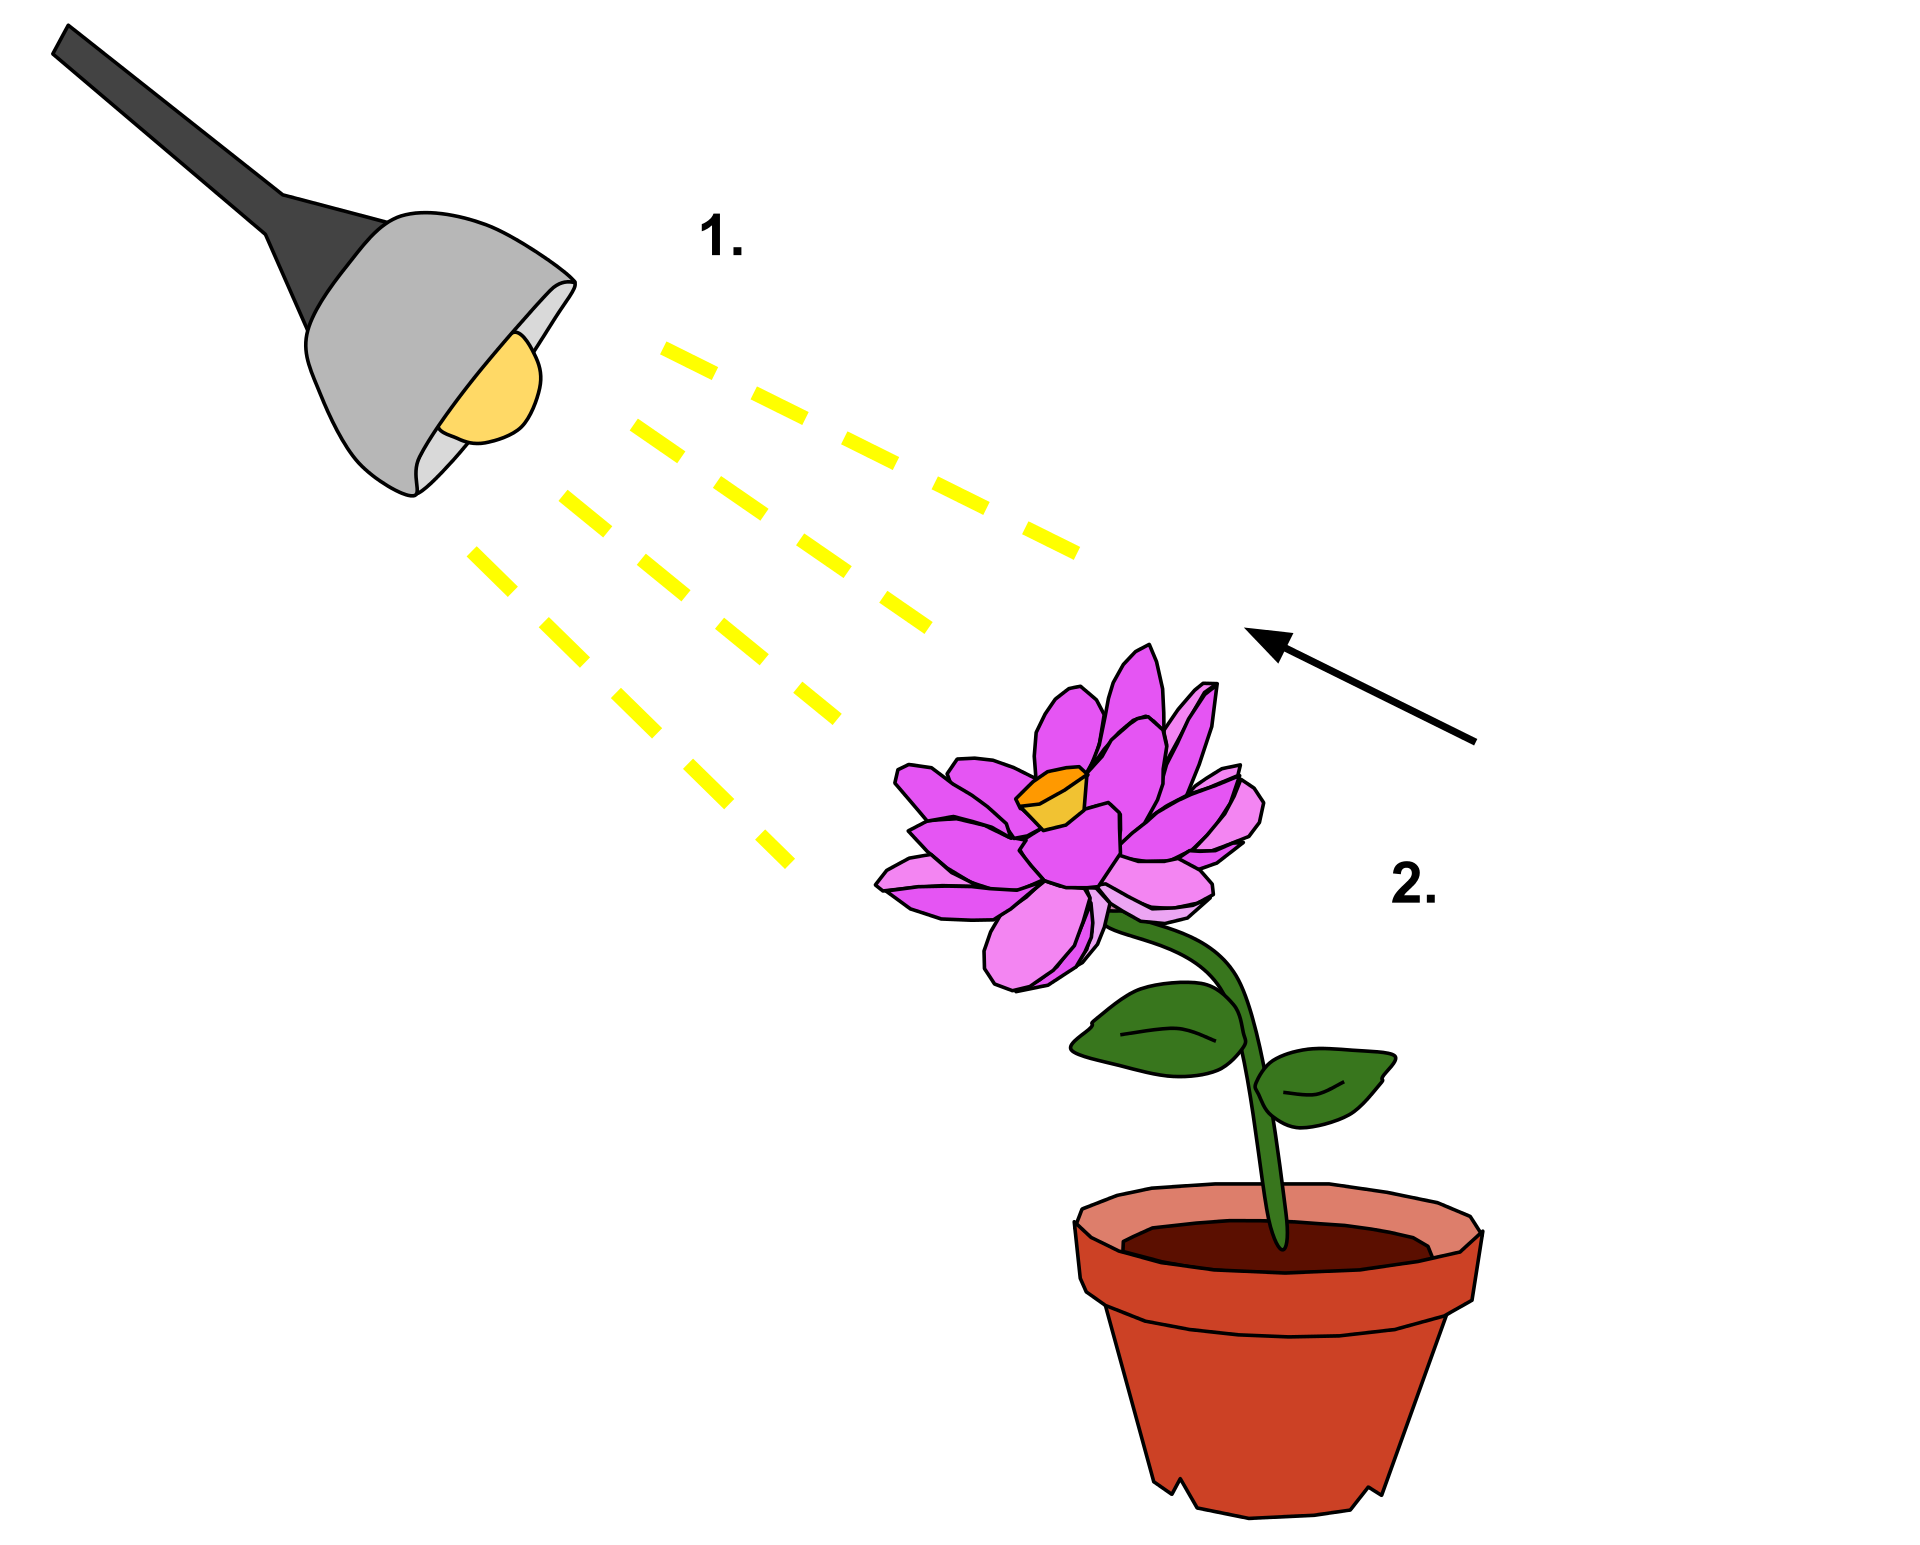 تبیین نور گرایی در گیاهان به صورت نقاشی